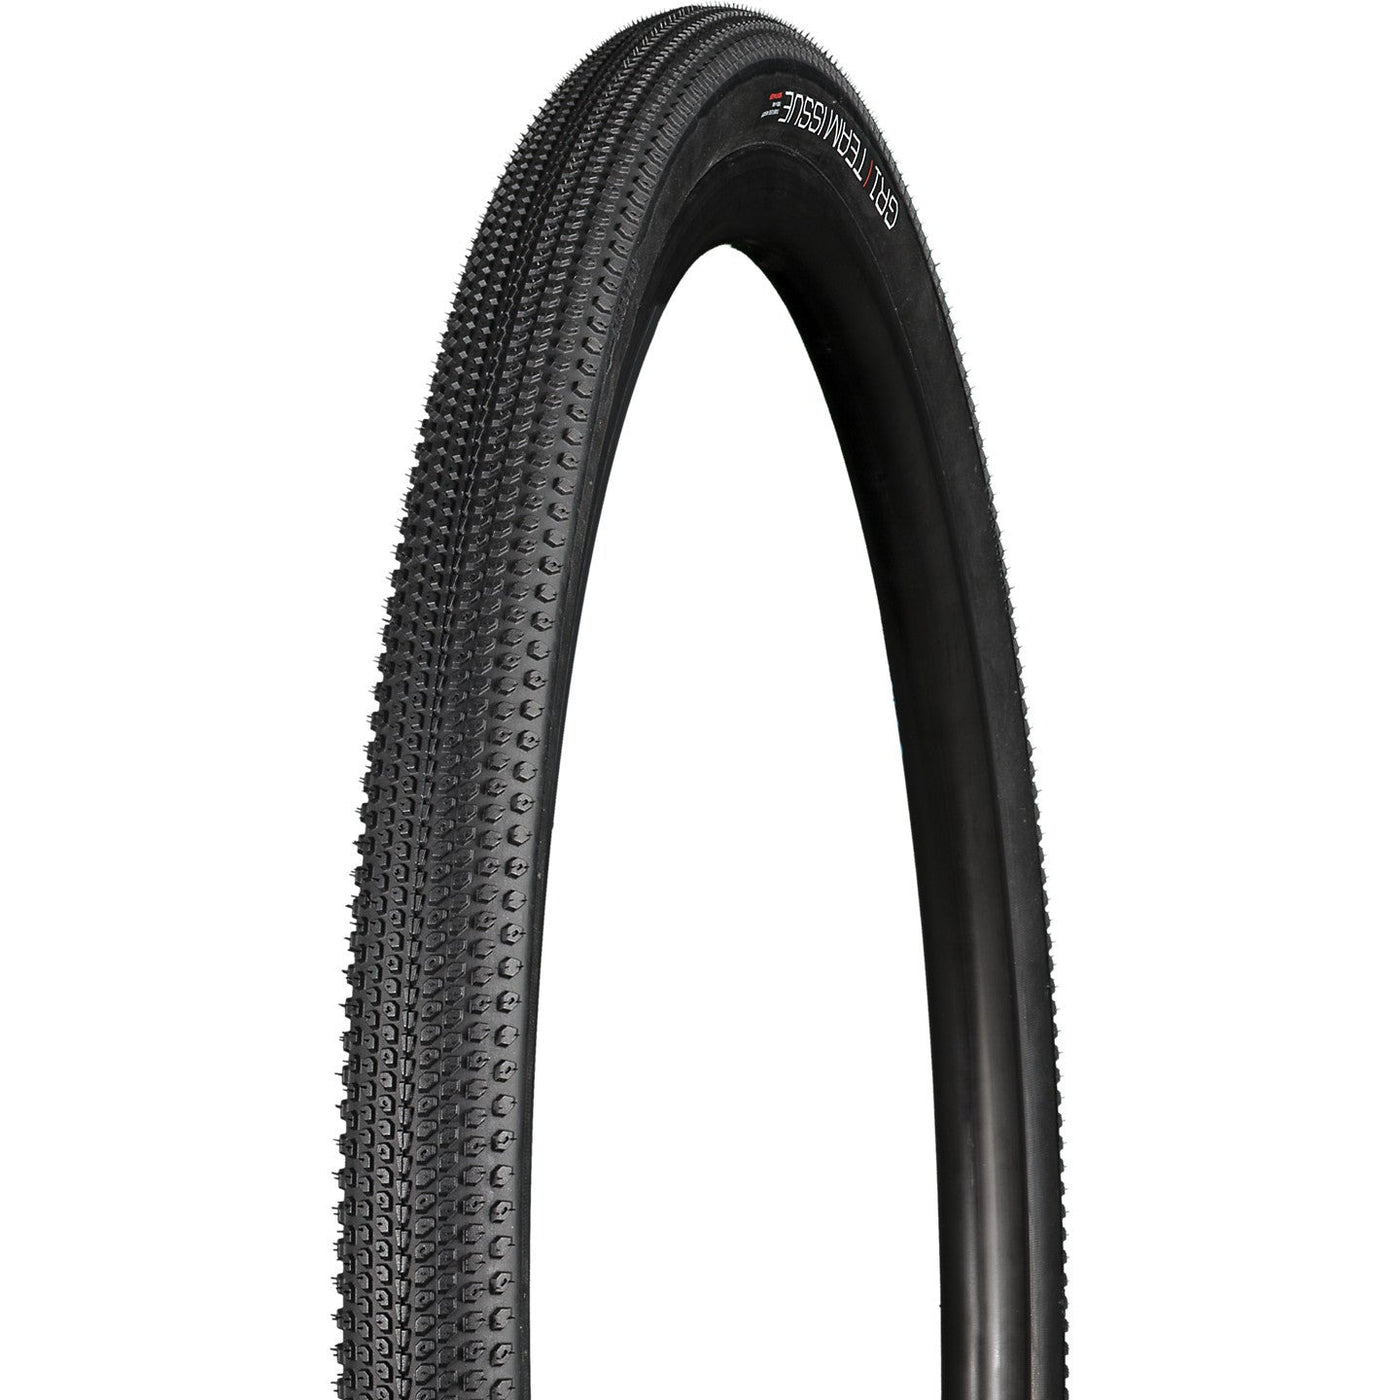 Bontrager GR1 Team Issue Gravel Tire 700C x 40mm Black